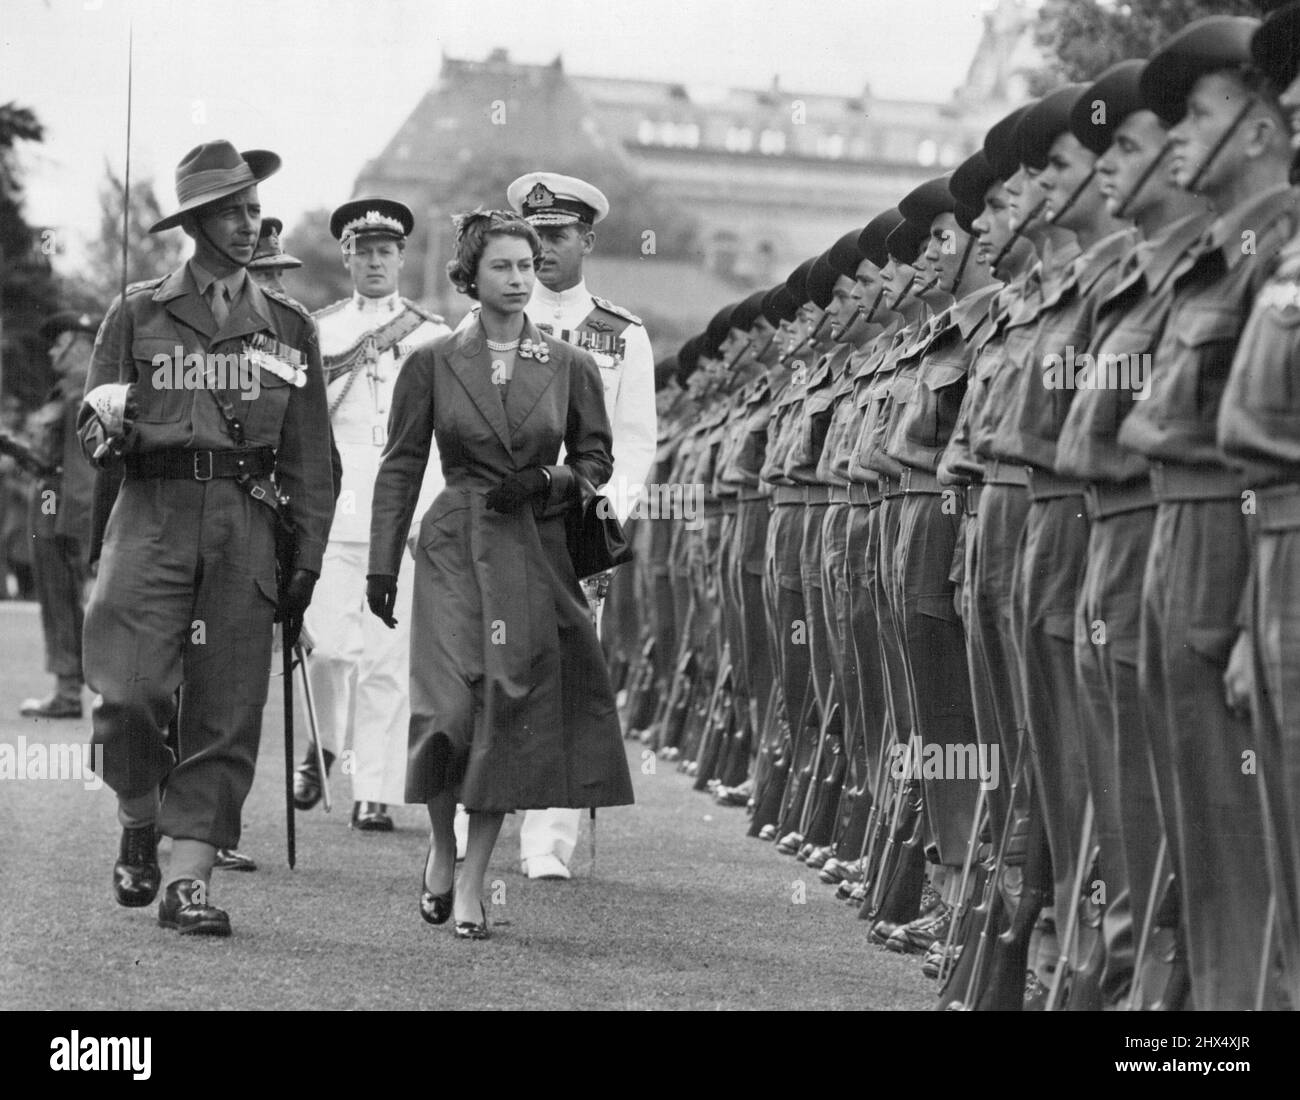 Eine Ehrenwache kam für den Royal Progress durch Adelaide. Königliche Hoheiten - Großbritannien-Königin Elizabeth II & Duke of Edinburgh - Königliche Touren - Aust.-Tour- 1954 - Allgemein. 12. April 1954. Stockfoto